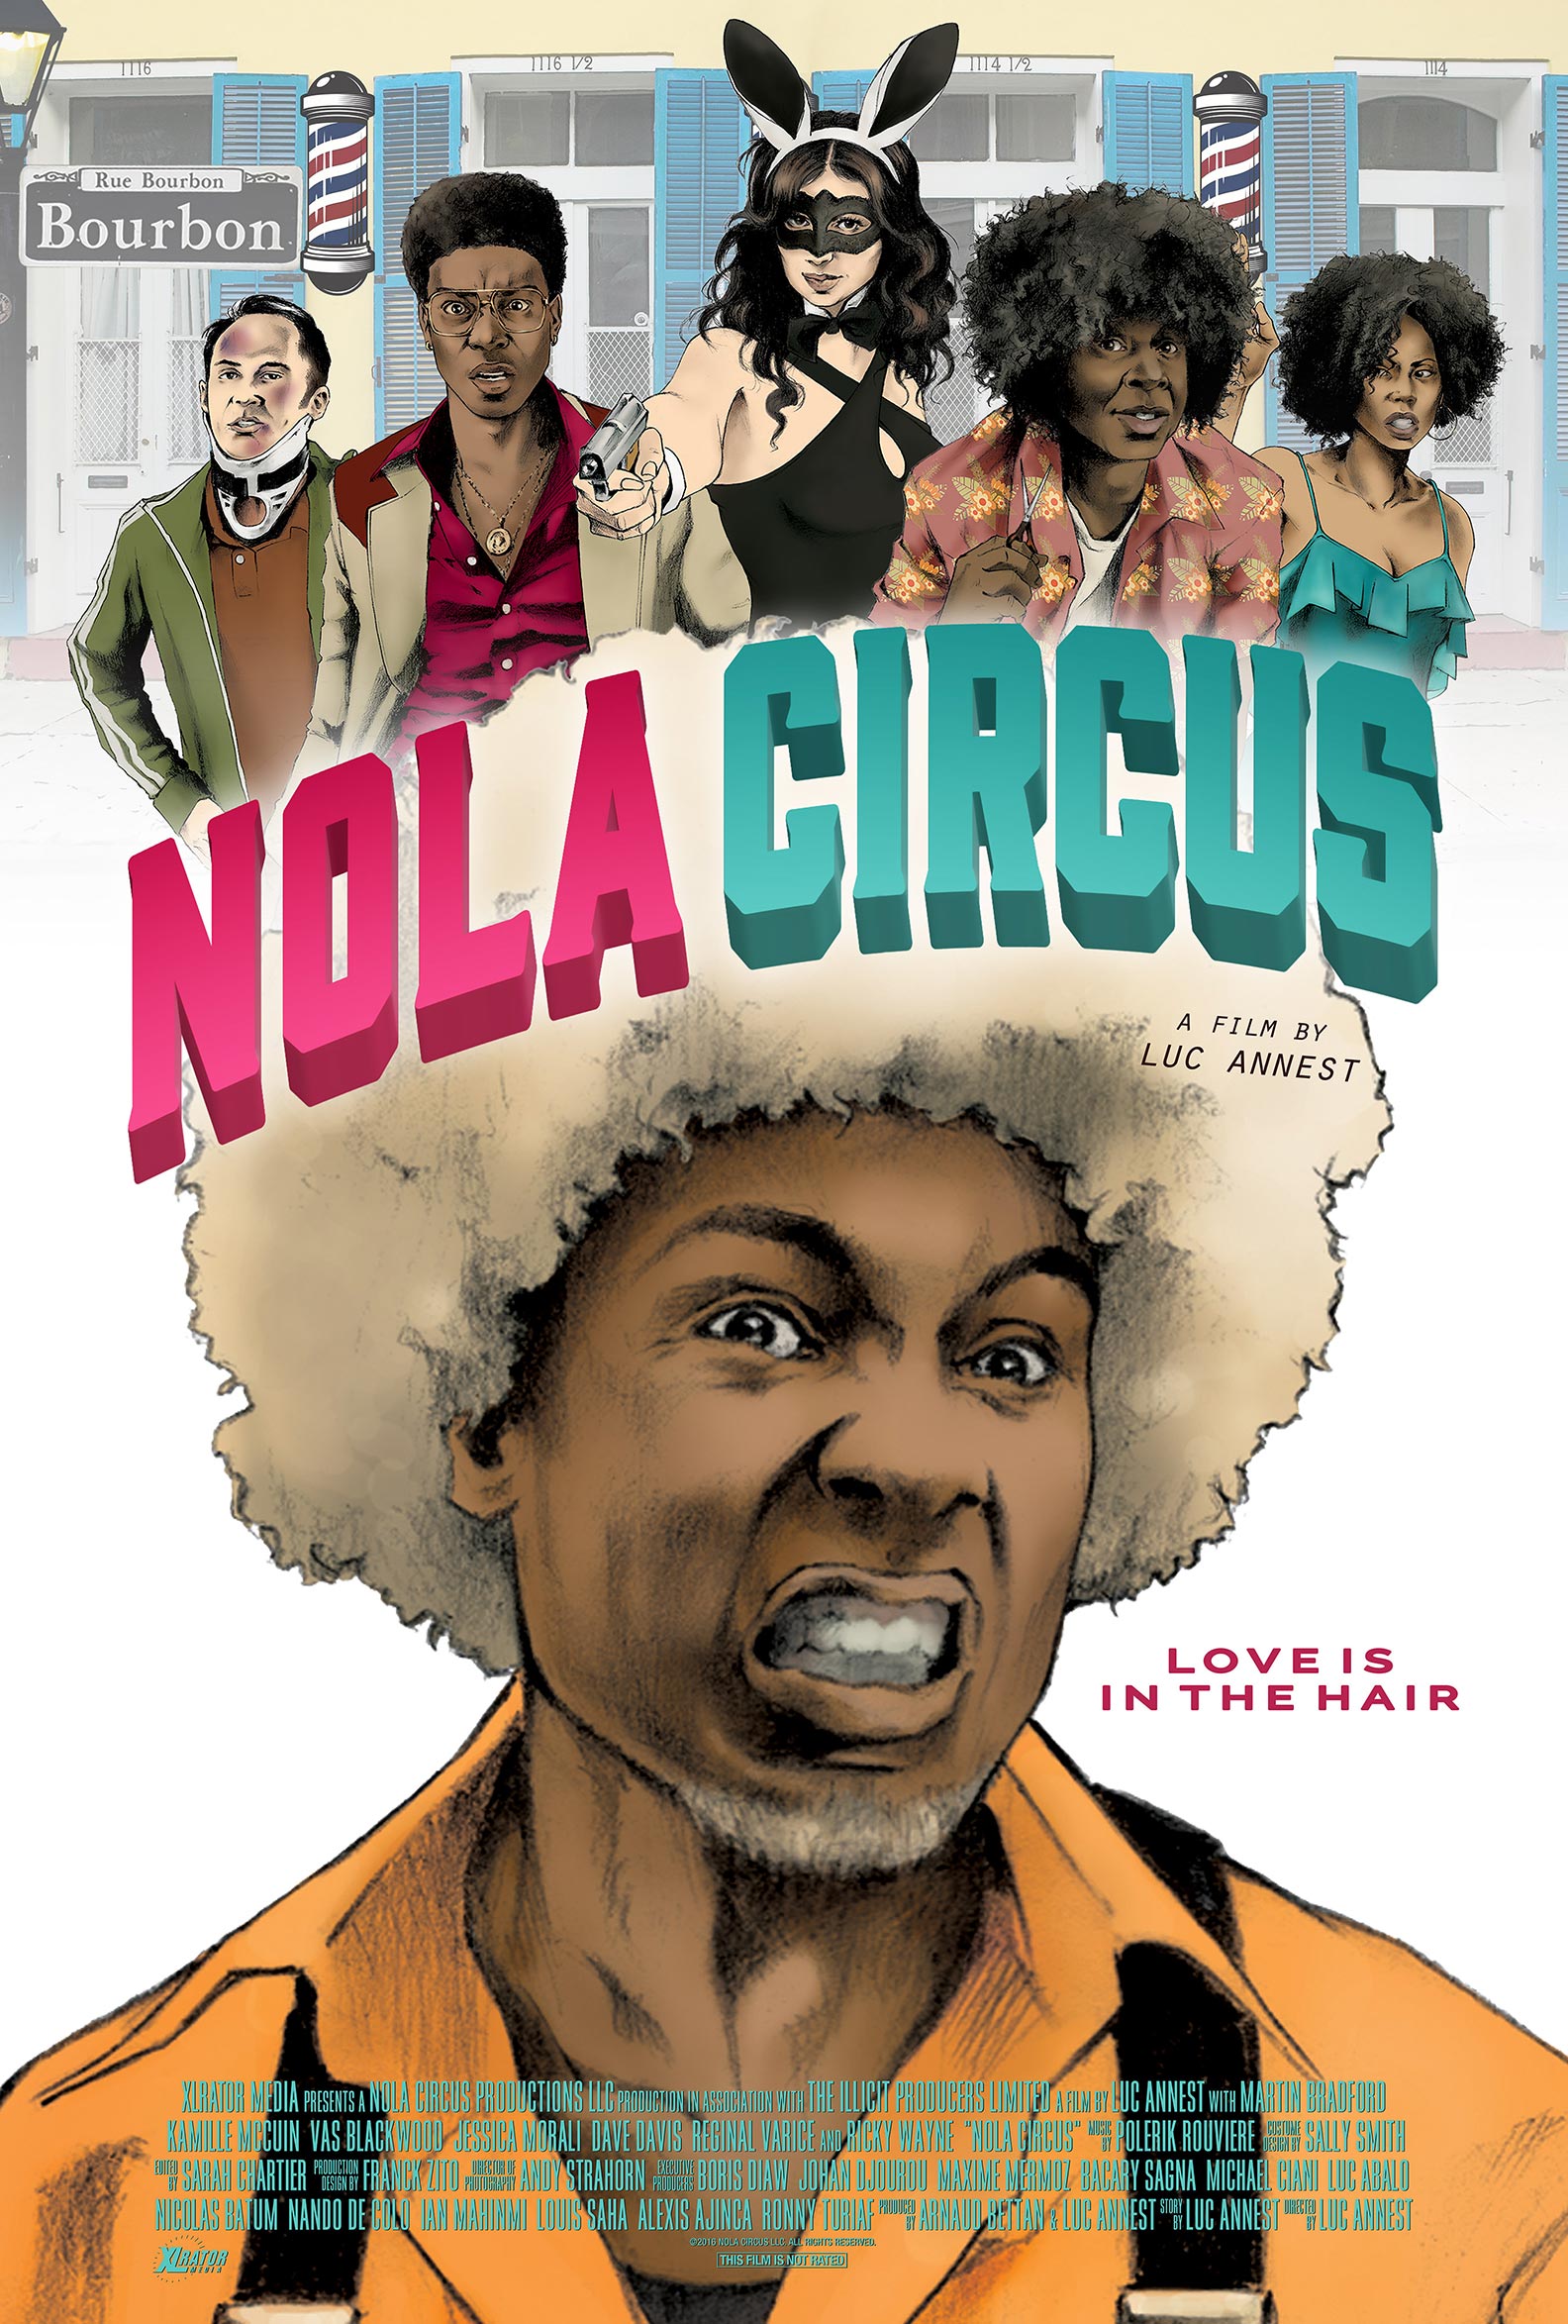 NOLA Circus Poster #2